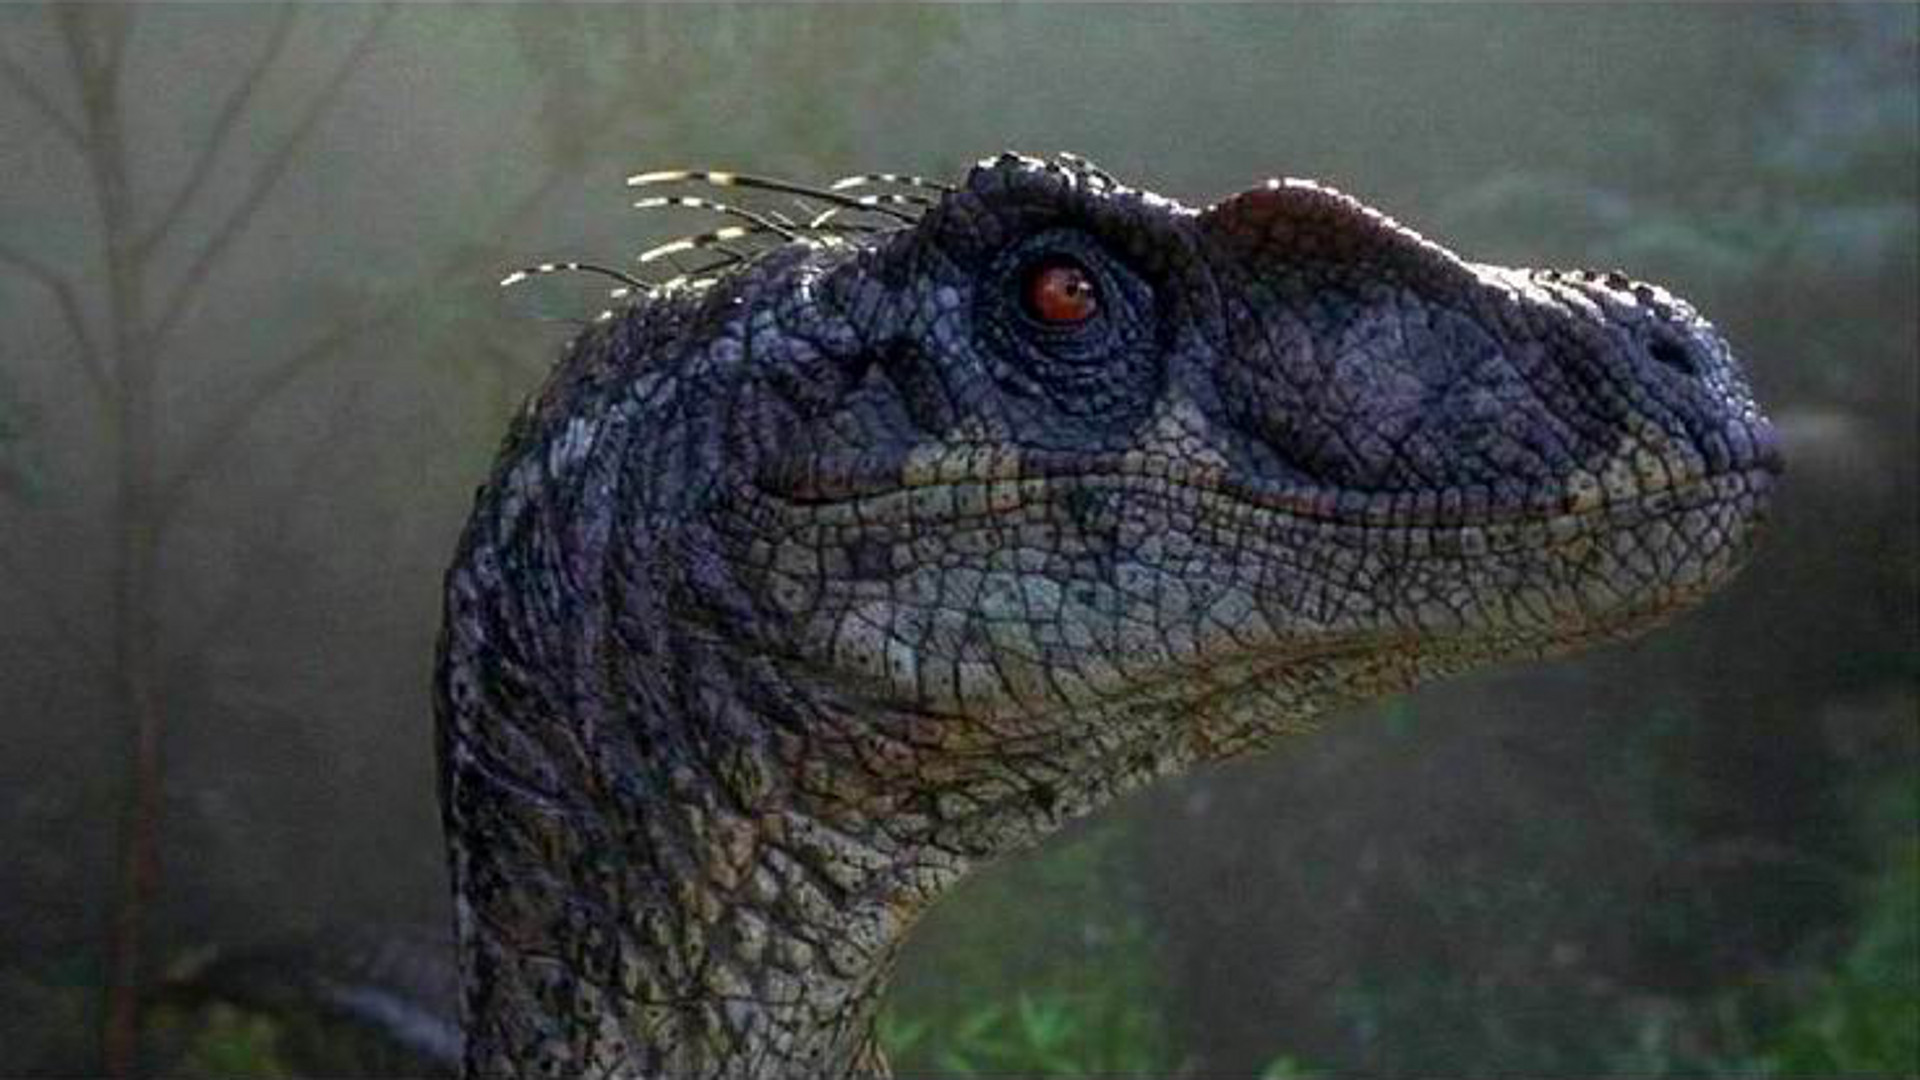 Jurassic World Velociraptor Wallpaper 82 Images 